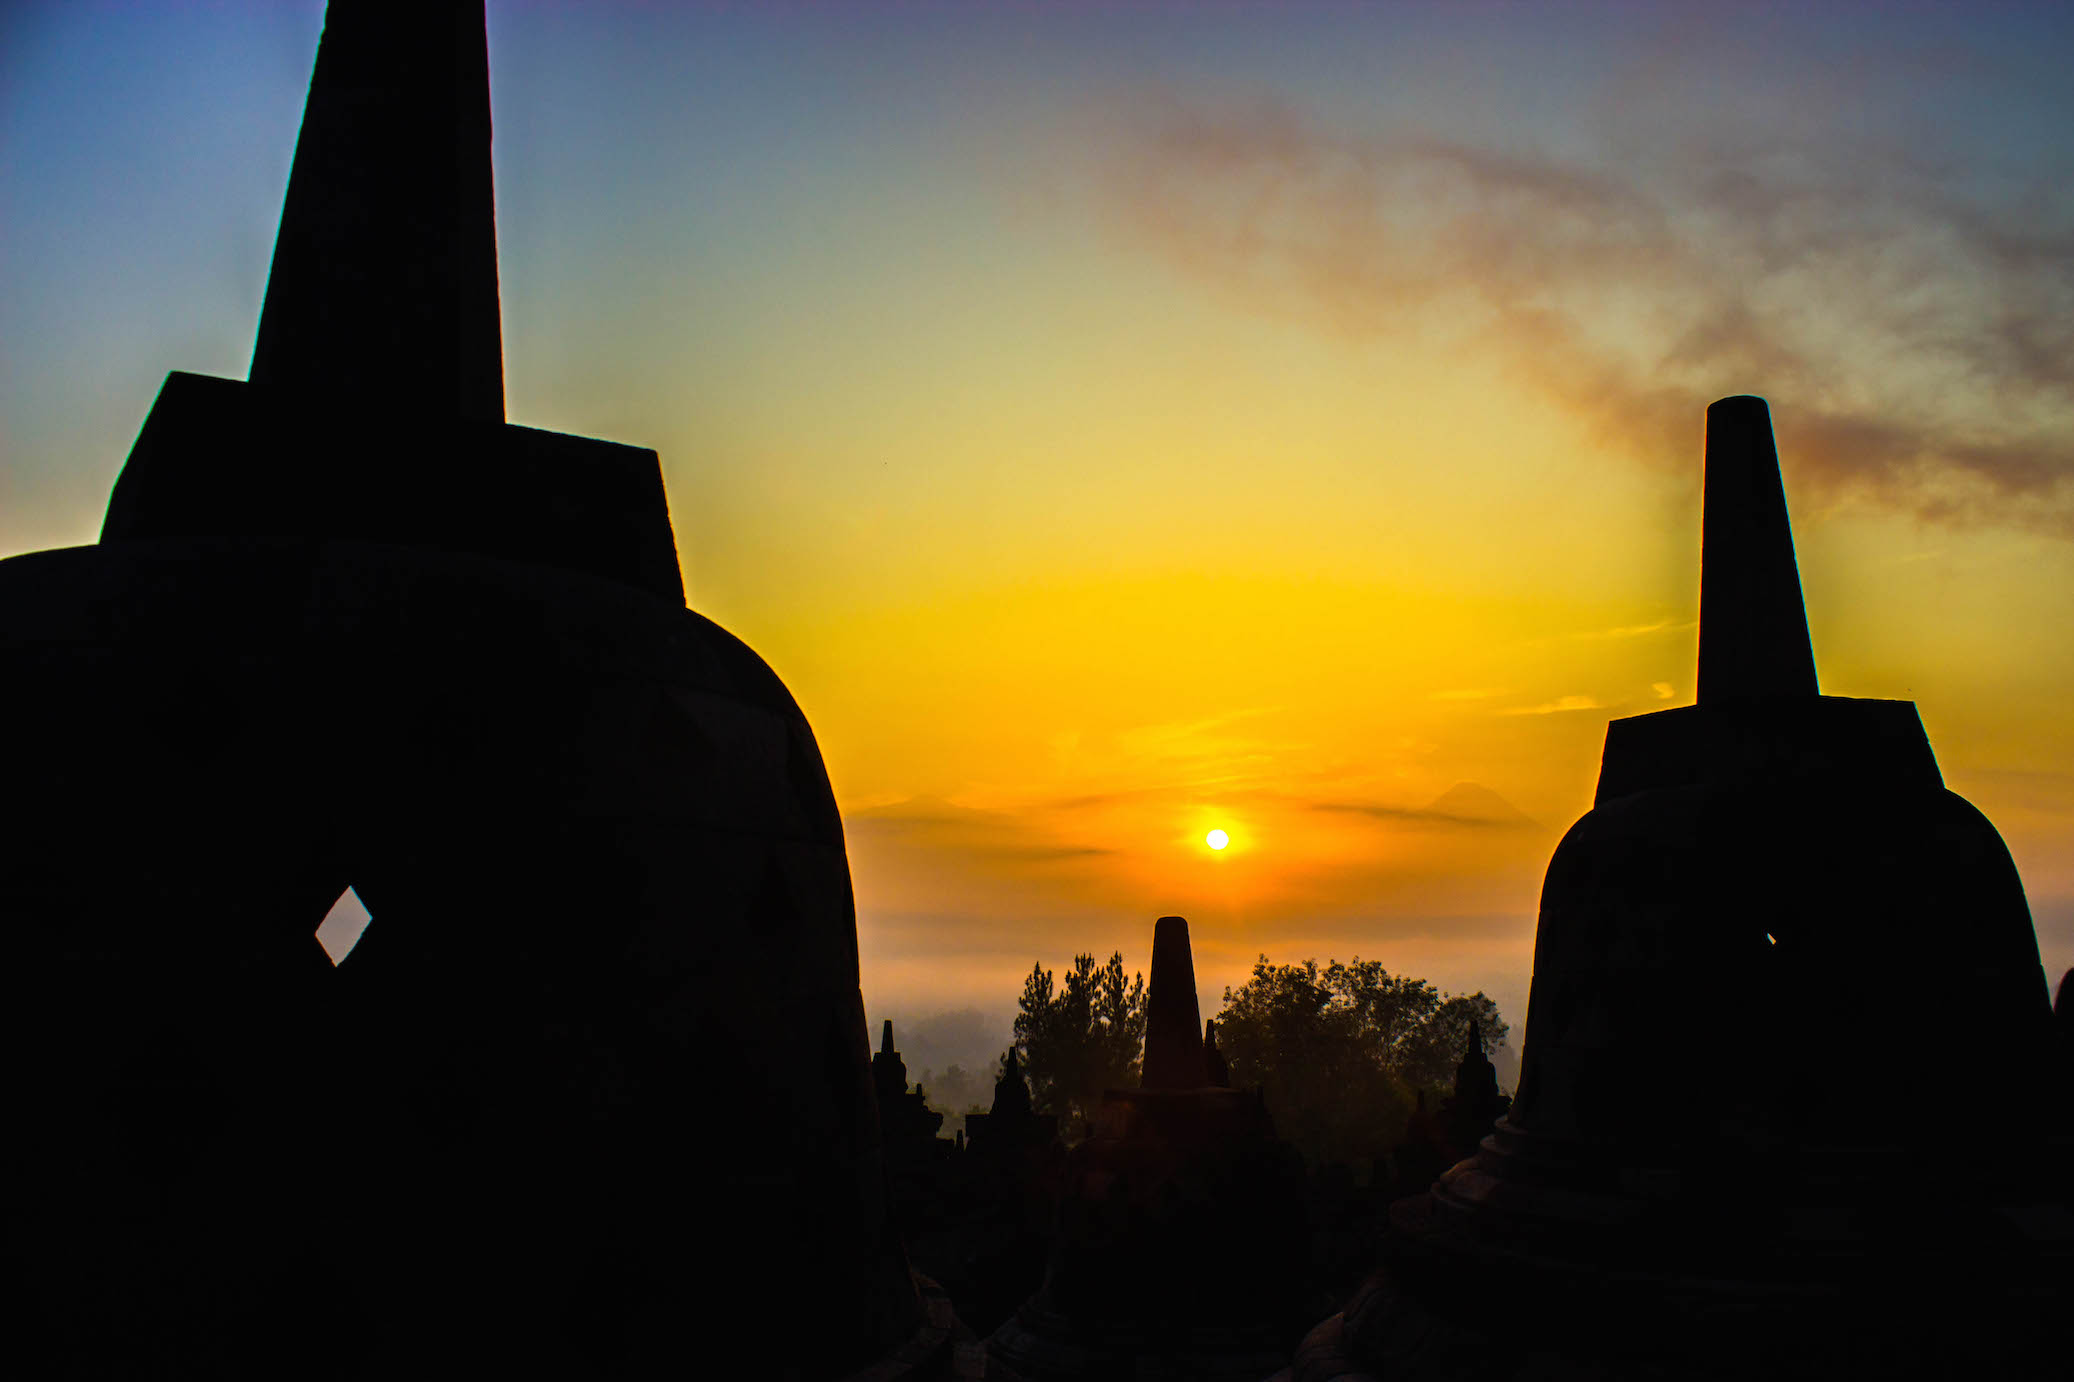 Sunrise over the Borobudur temple, Indonesia